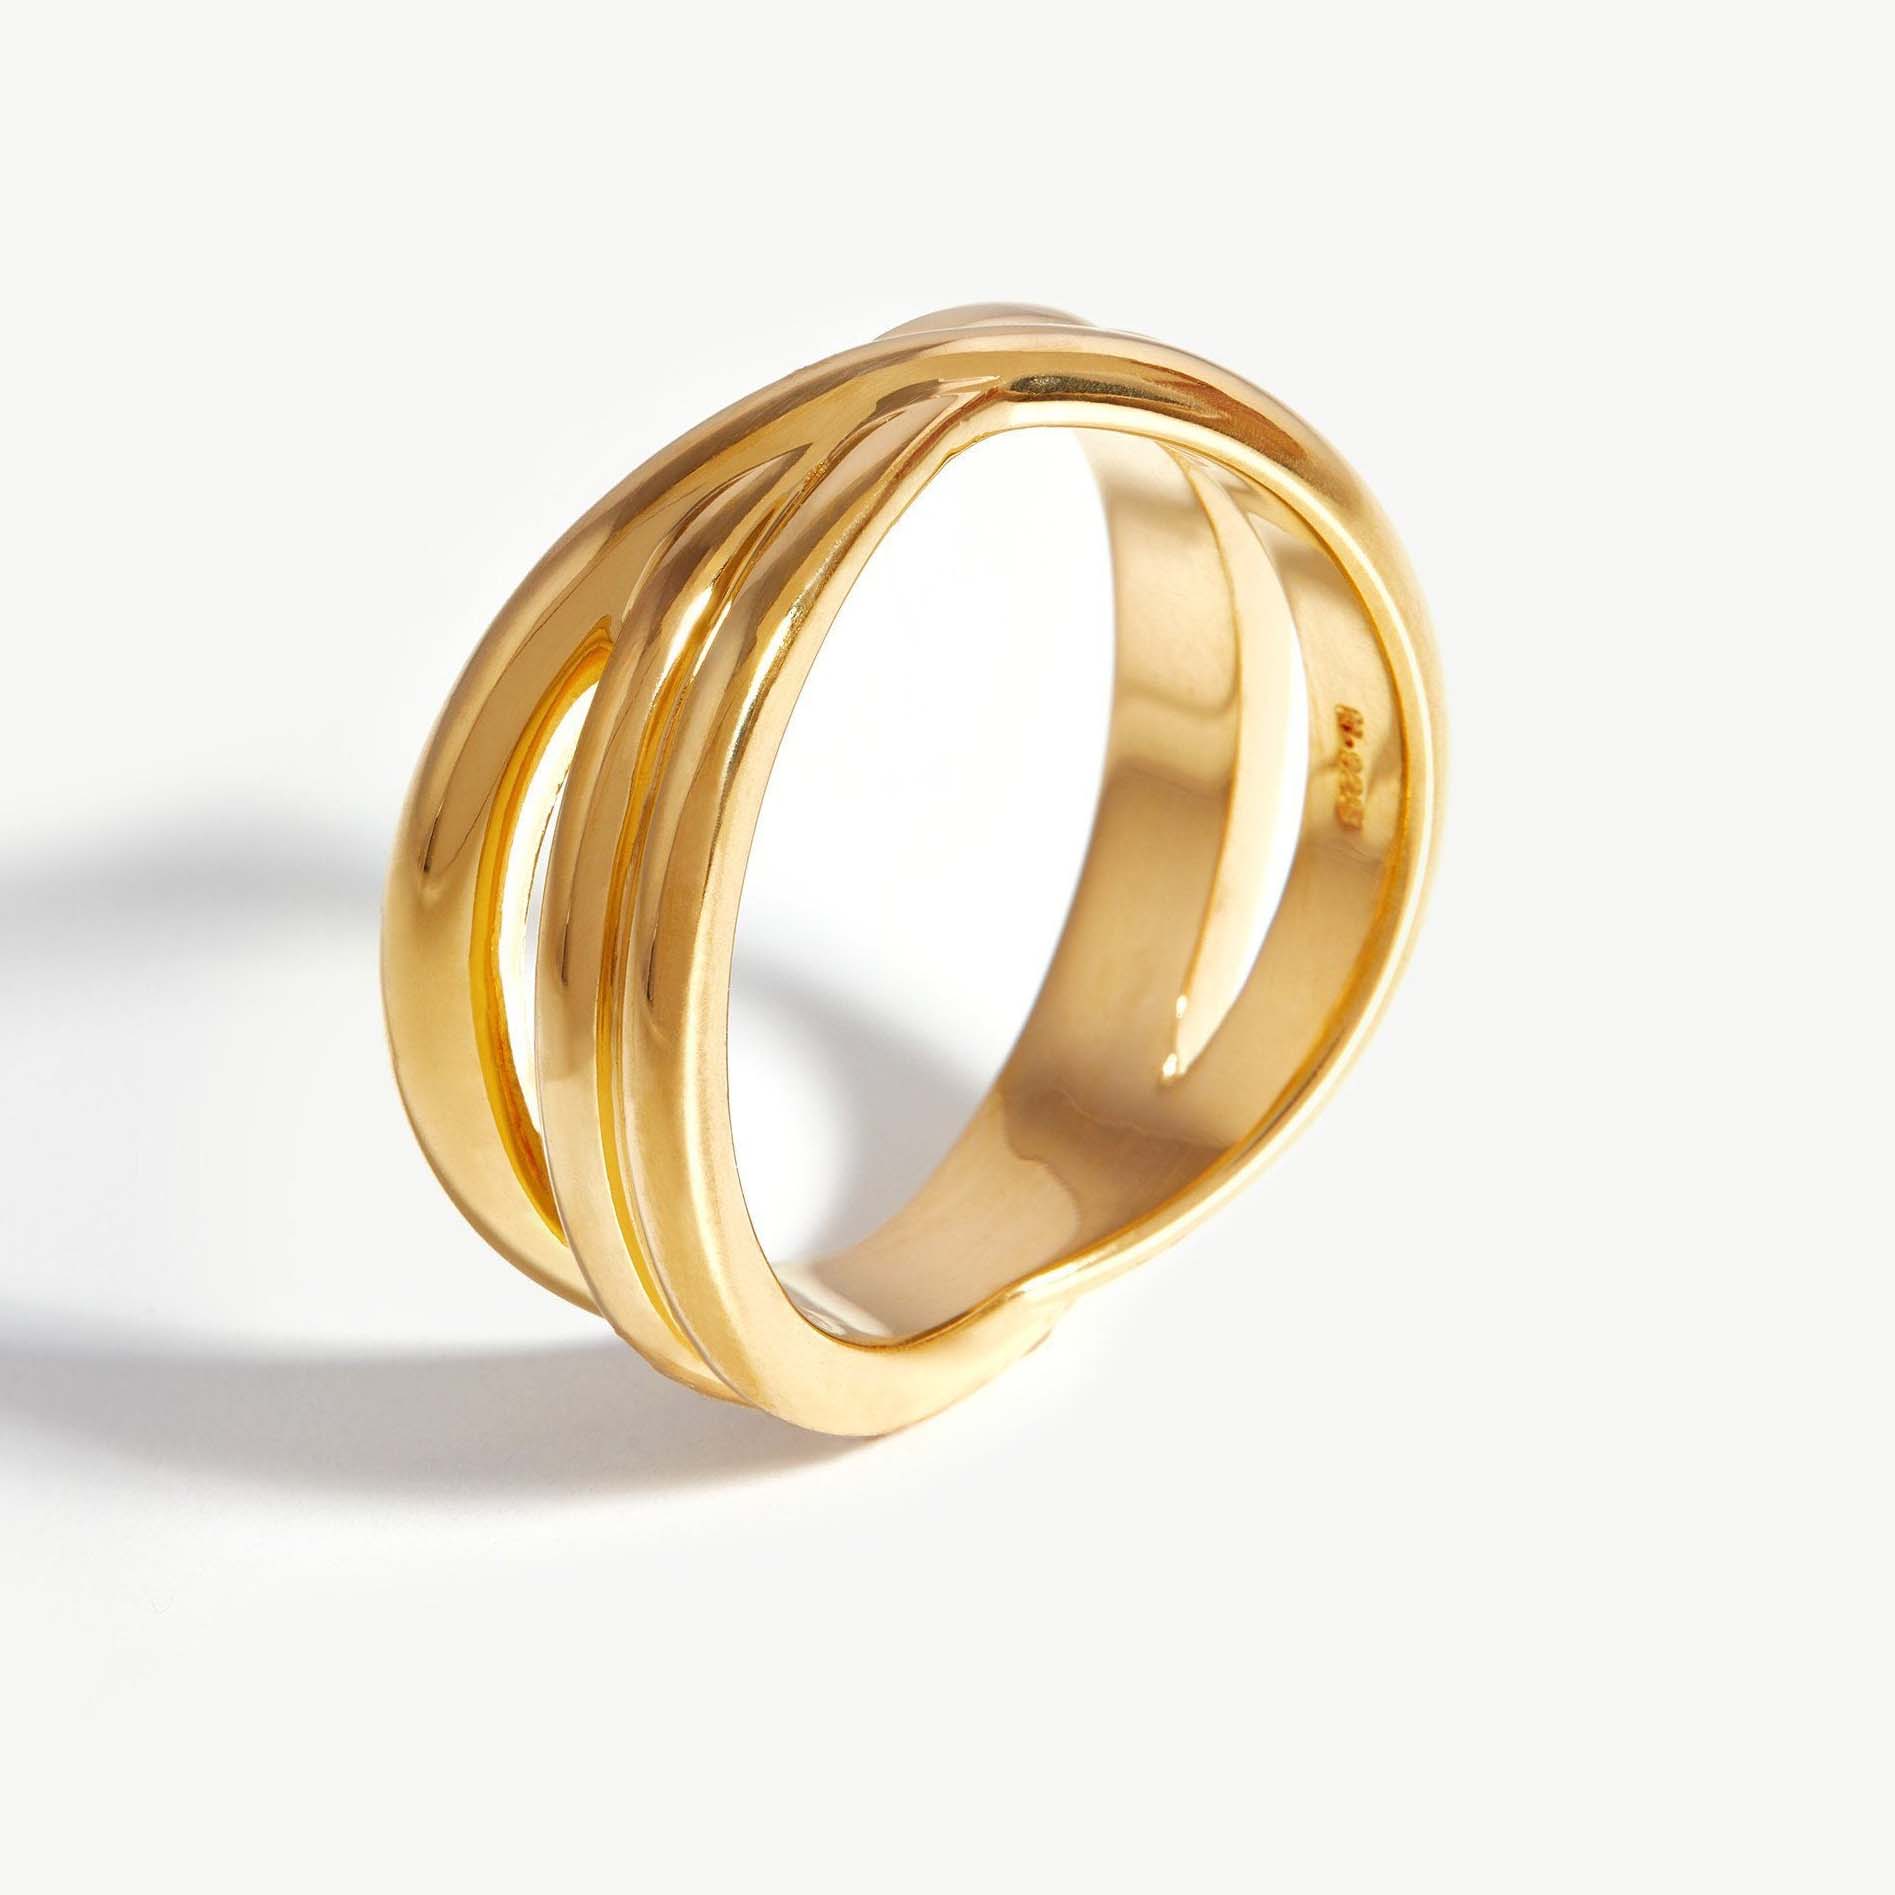 Prsteny s vlastním designem z 18K zlata Vermeil na mincovním stříbře